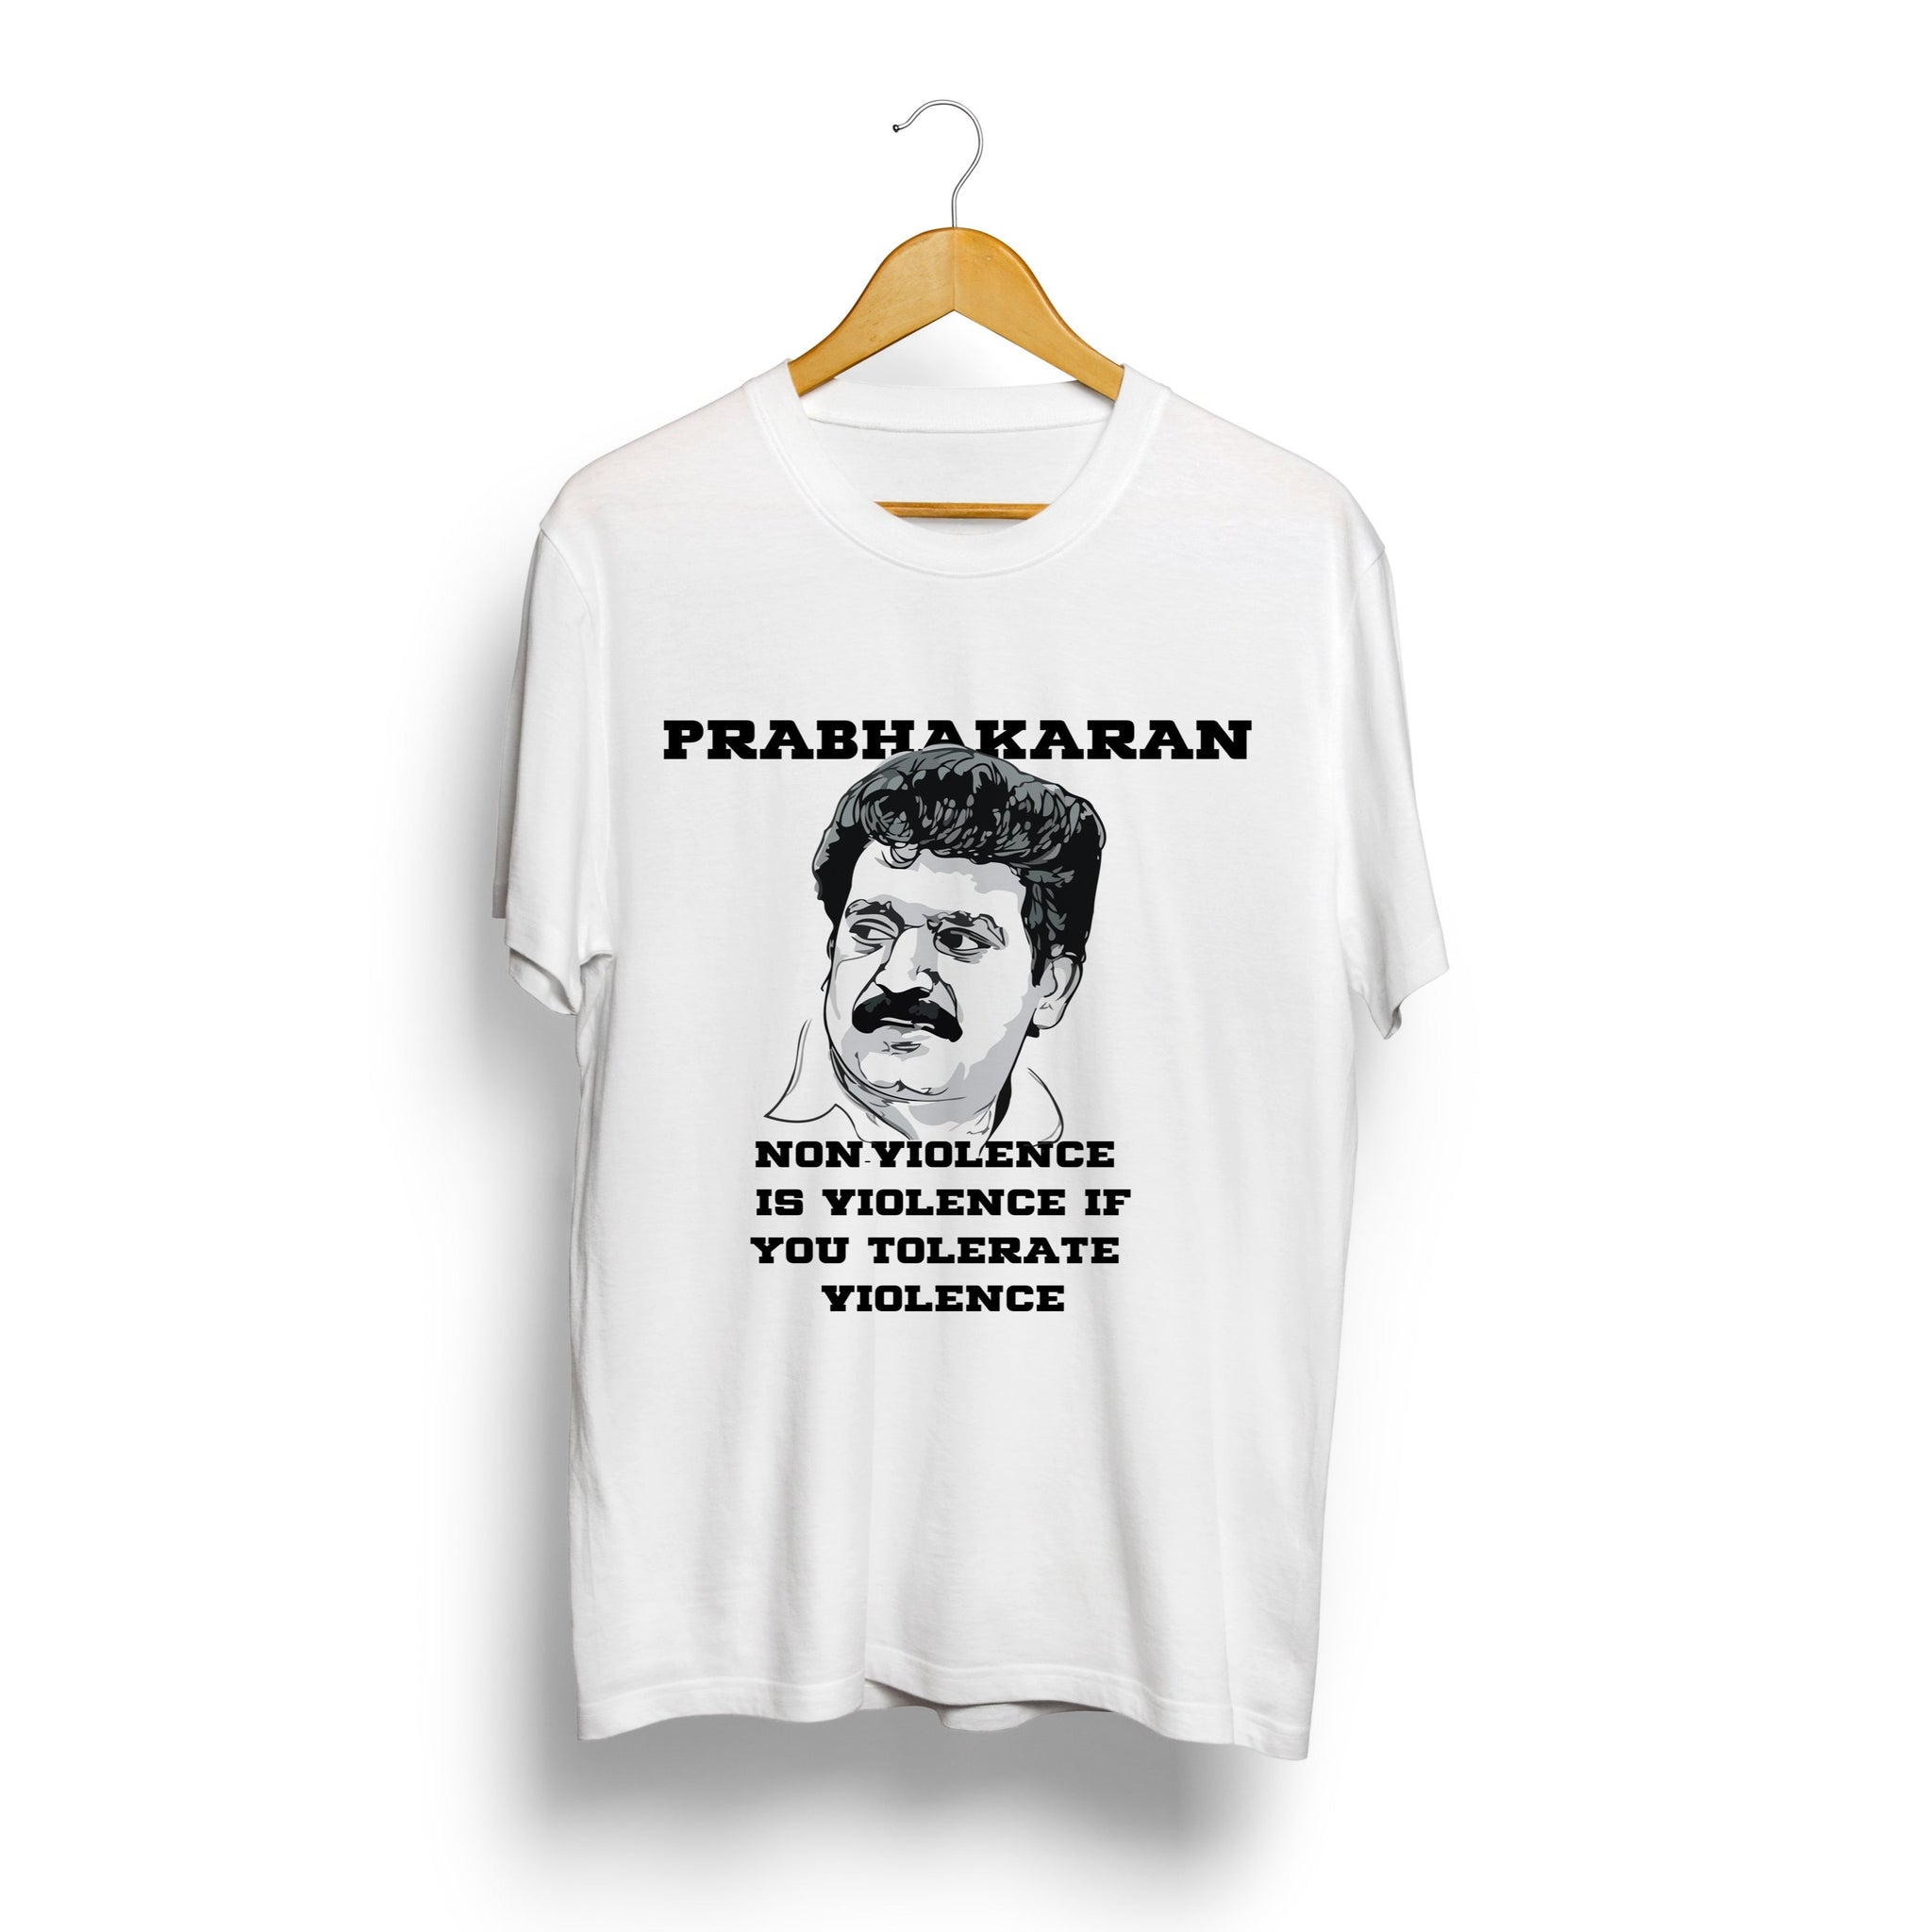 Captain Prabhakaran | Tech company logos, Company logo, Favorite movies